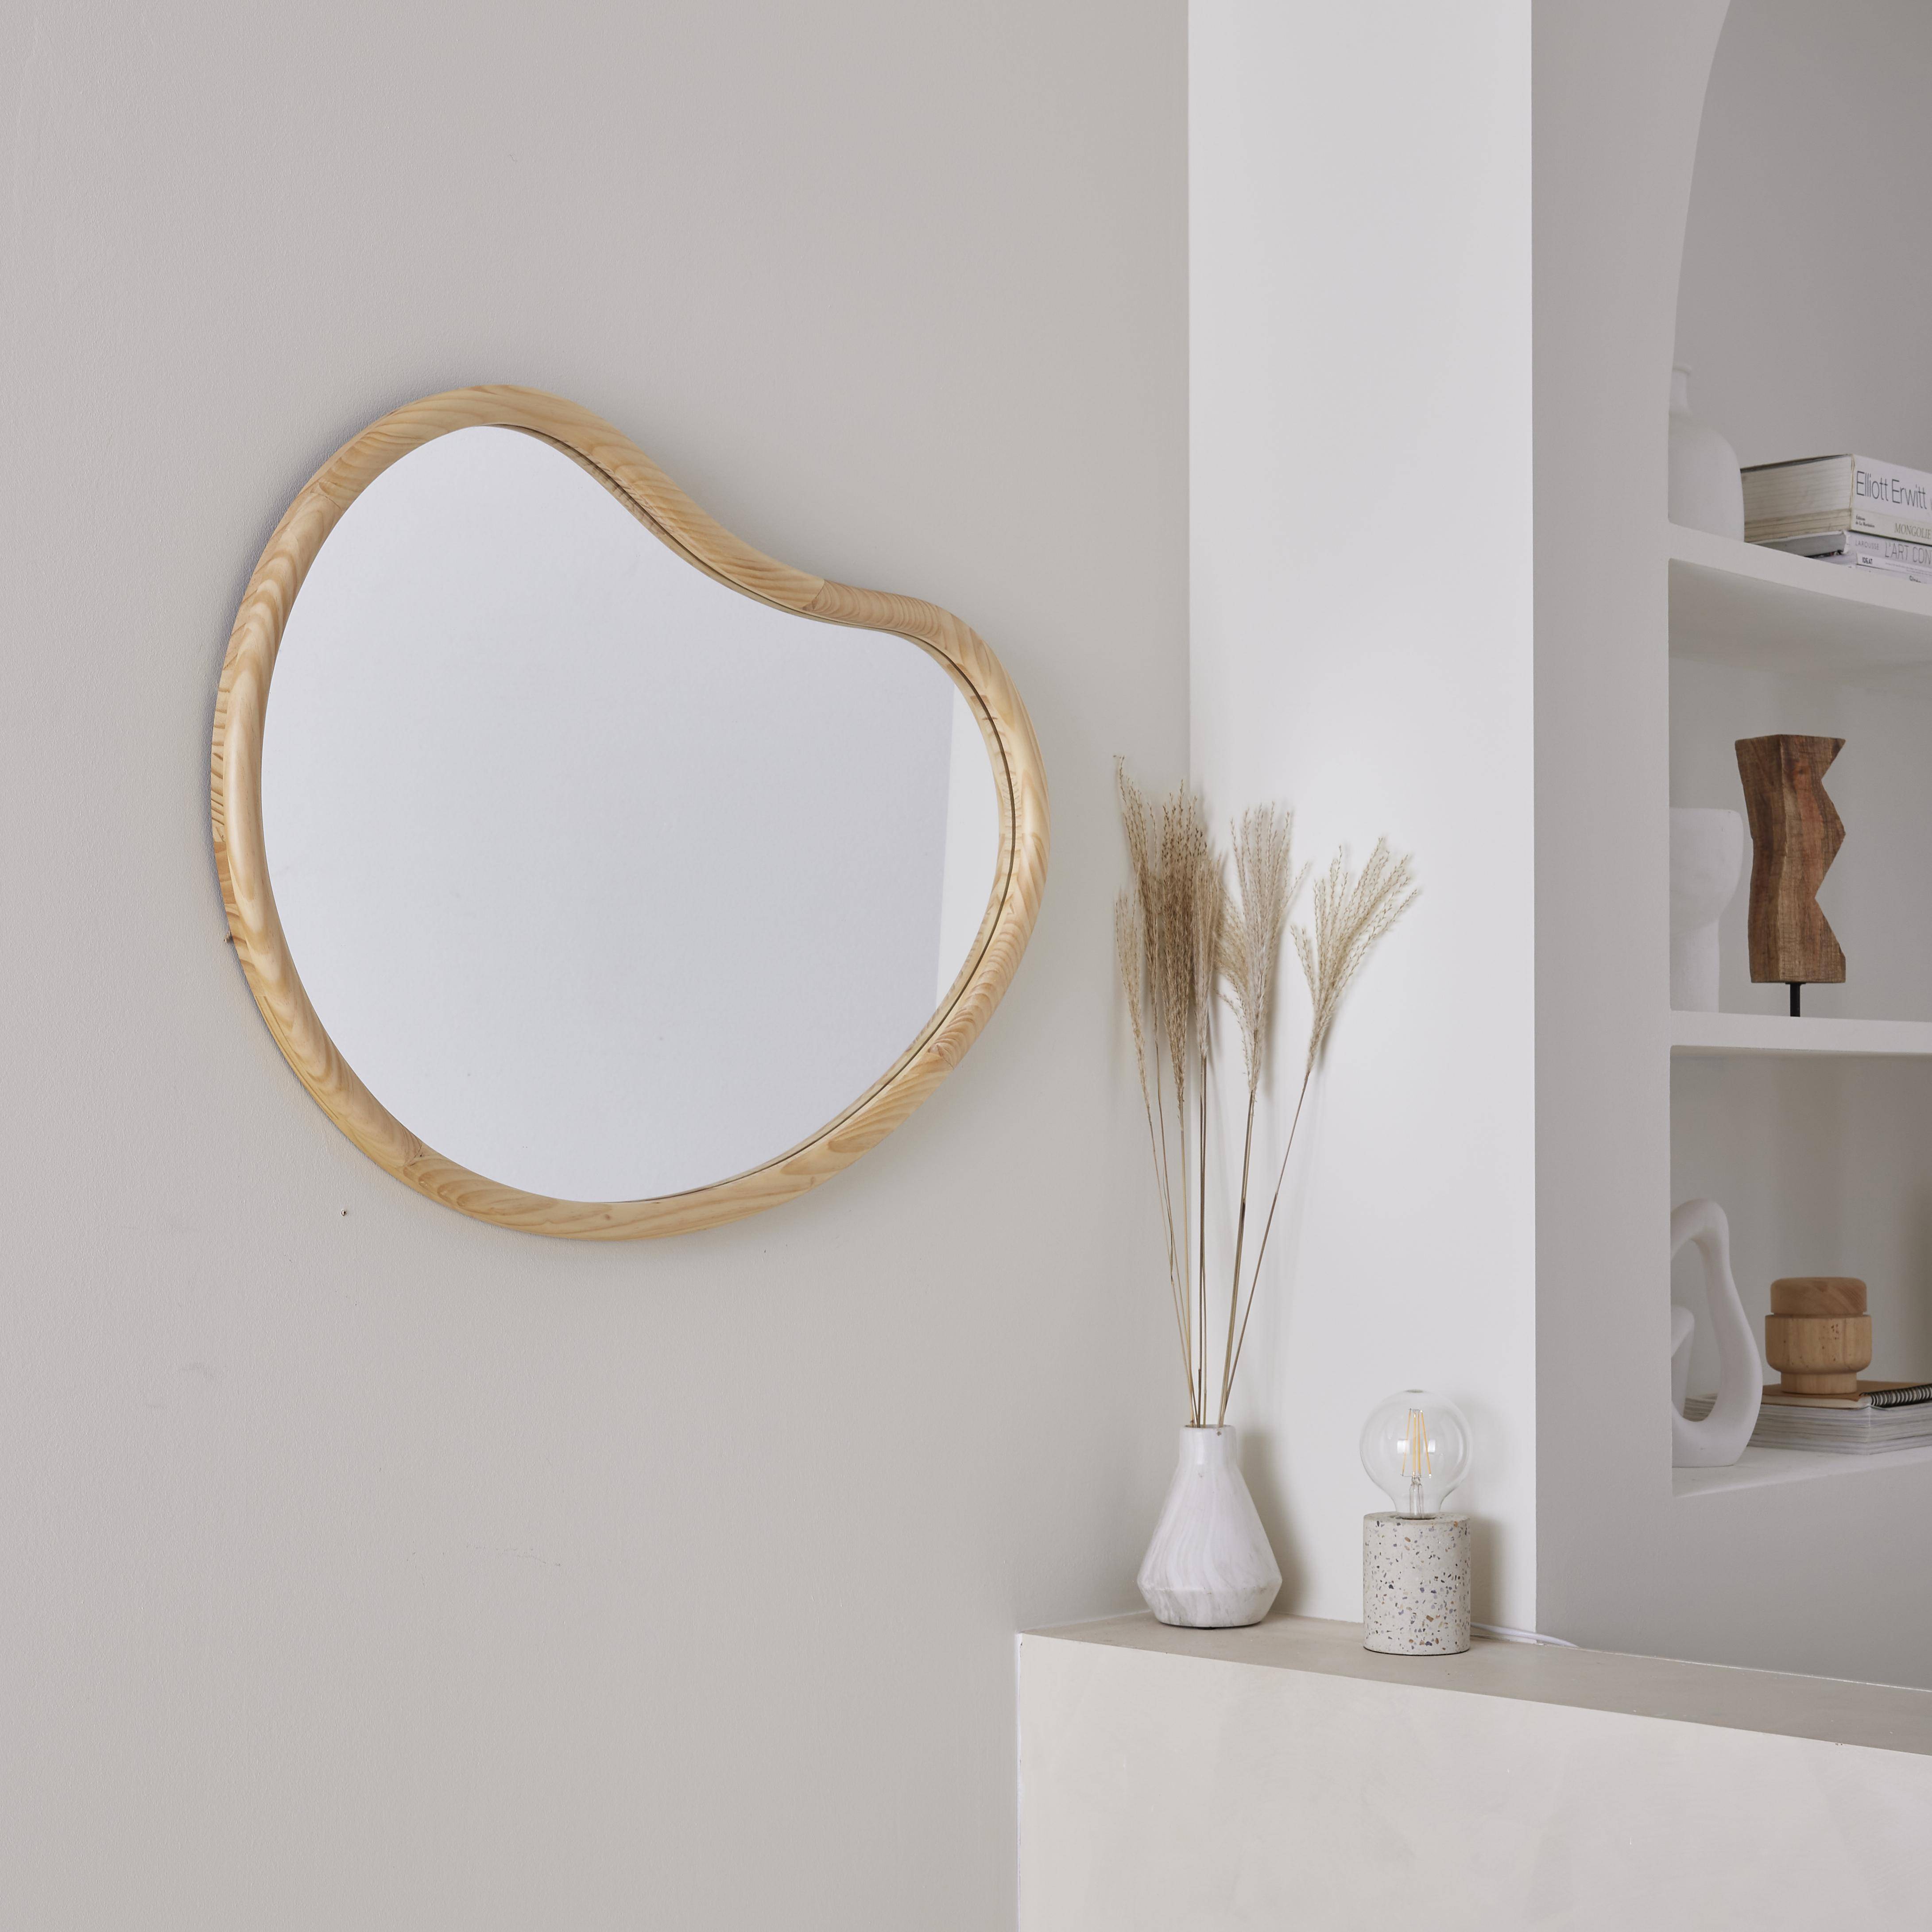 Miroir organique en bois de sapin 85cm épaisseur 3cm coloris naturel idéal entrée, chambre ou salle de bain,sweeek,Photo2